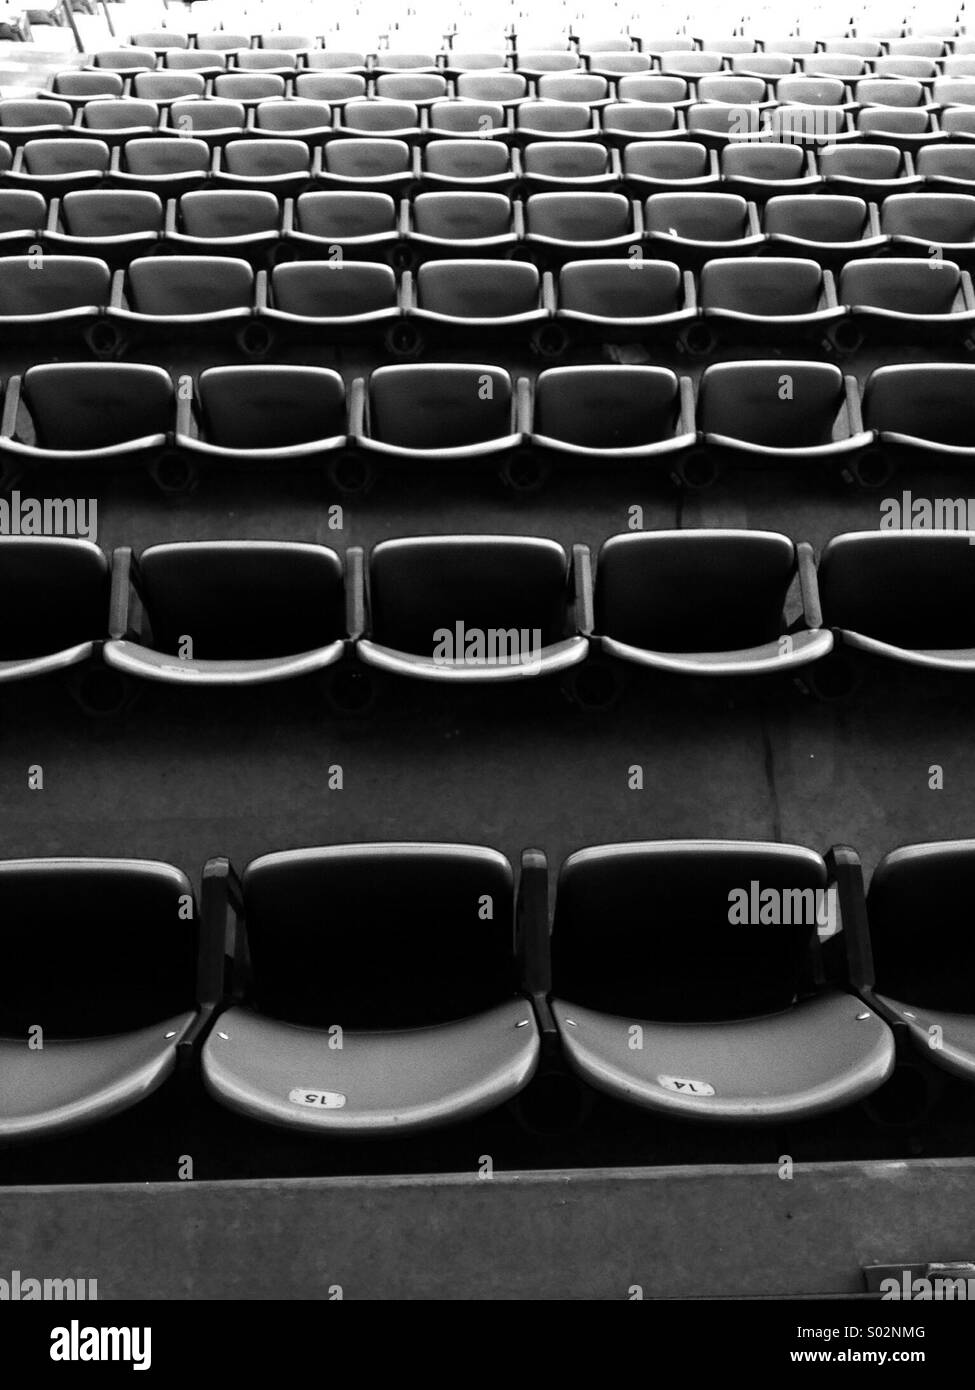 Des rangées de sièges à un stade Banque D'Images